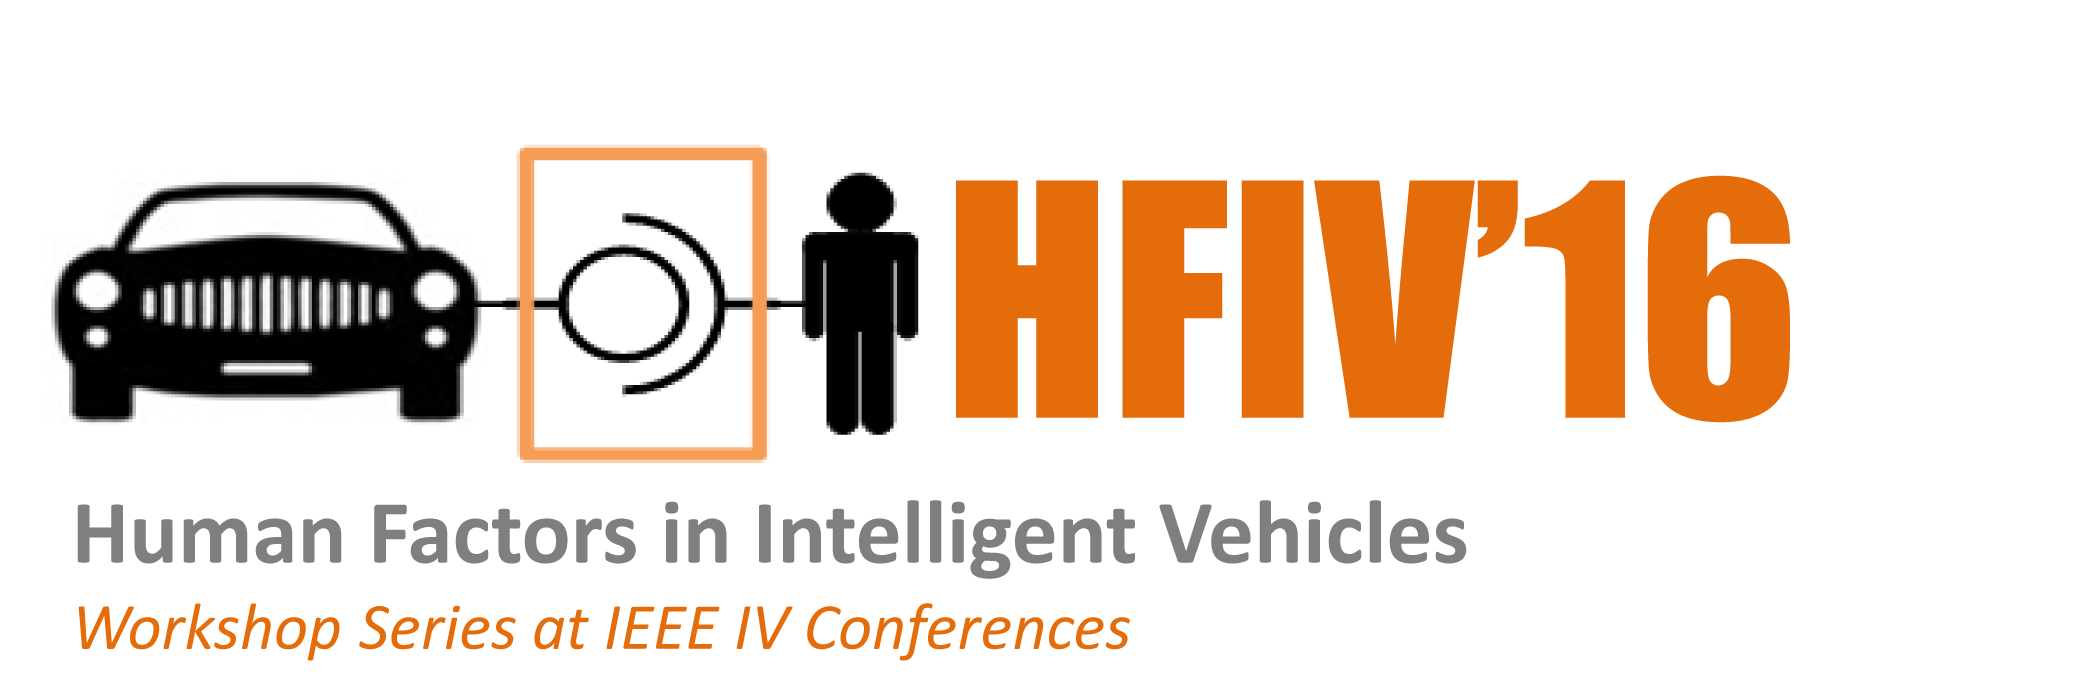 HFIV16 logo